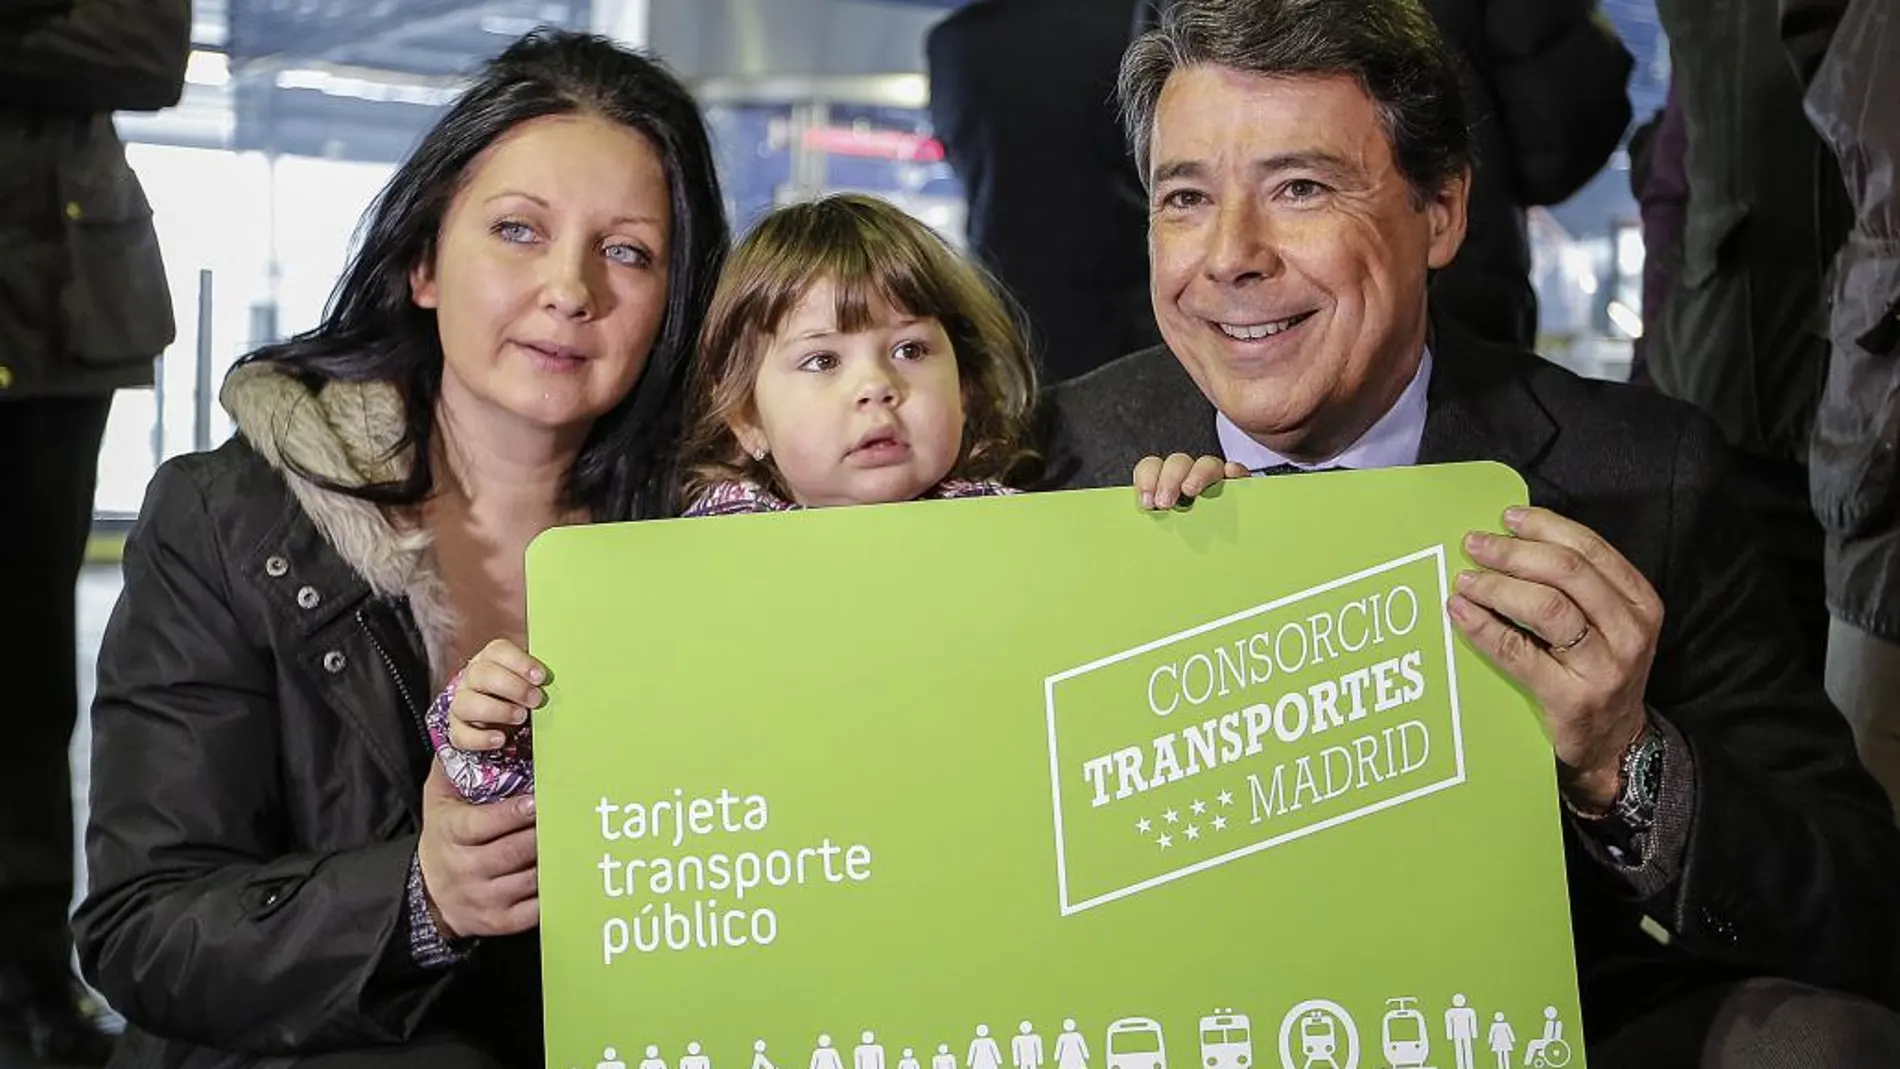 El presidente de la Comunidad de Madrid, Ignacio González, en la presentación de las “tarjetas verdes” que hoy están disponibles